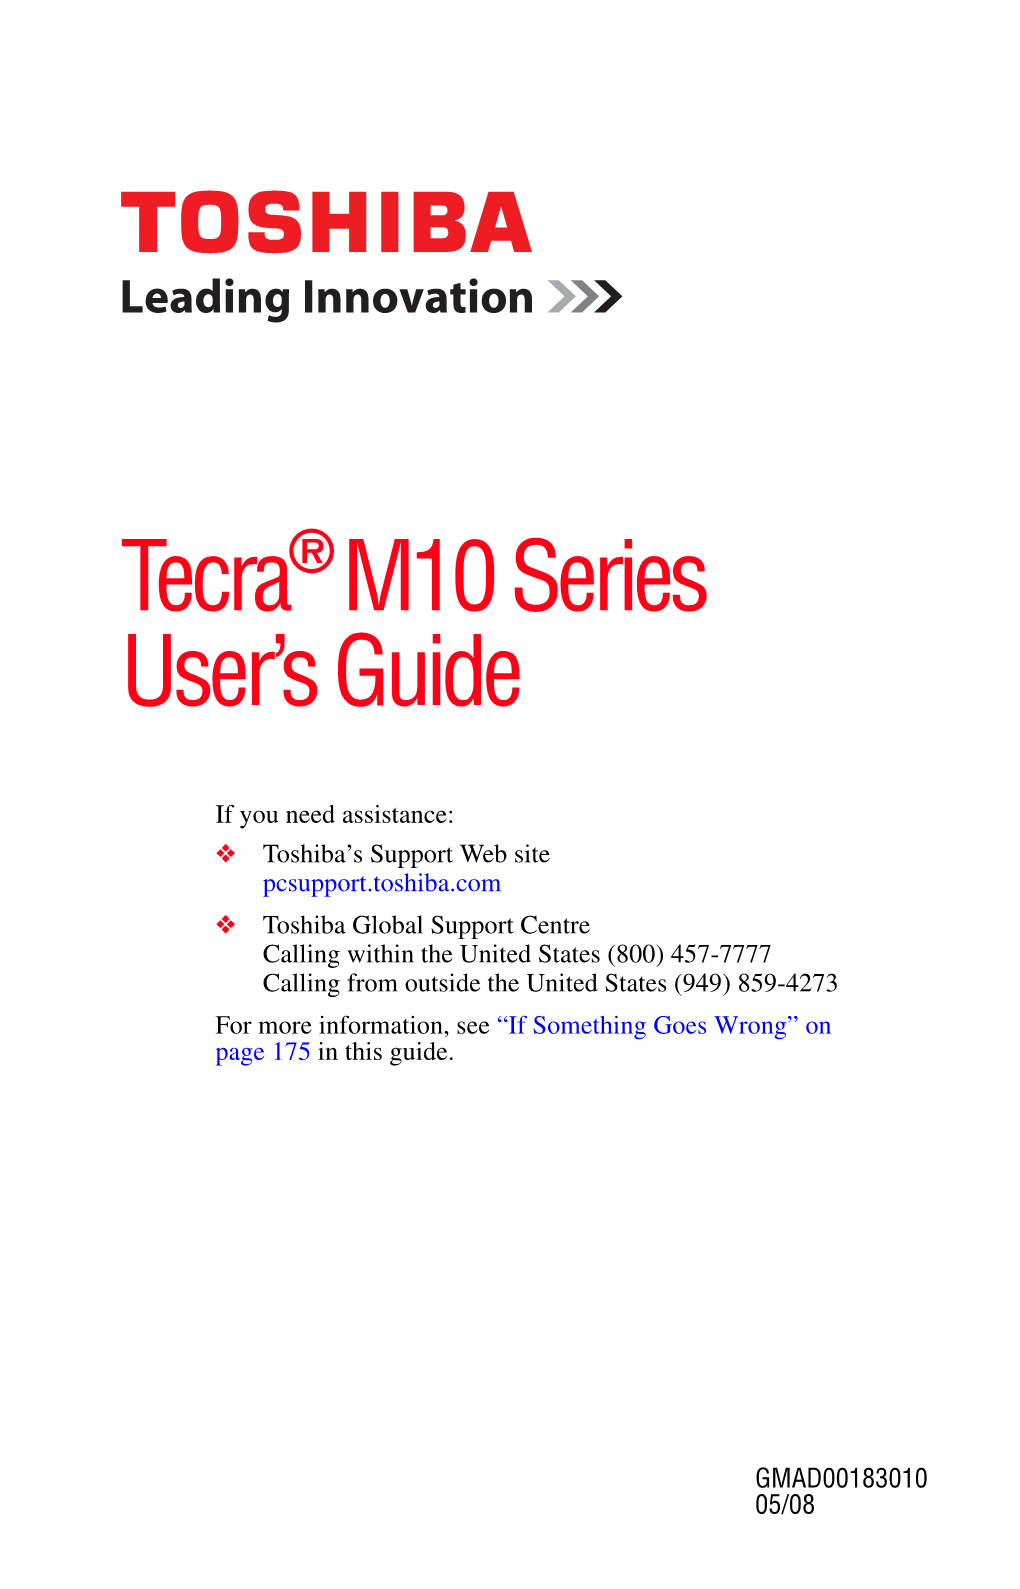 Tecra® M10 Series User's Guide